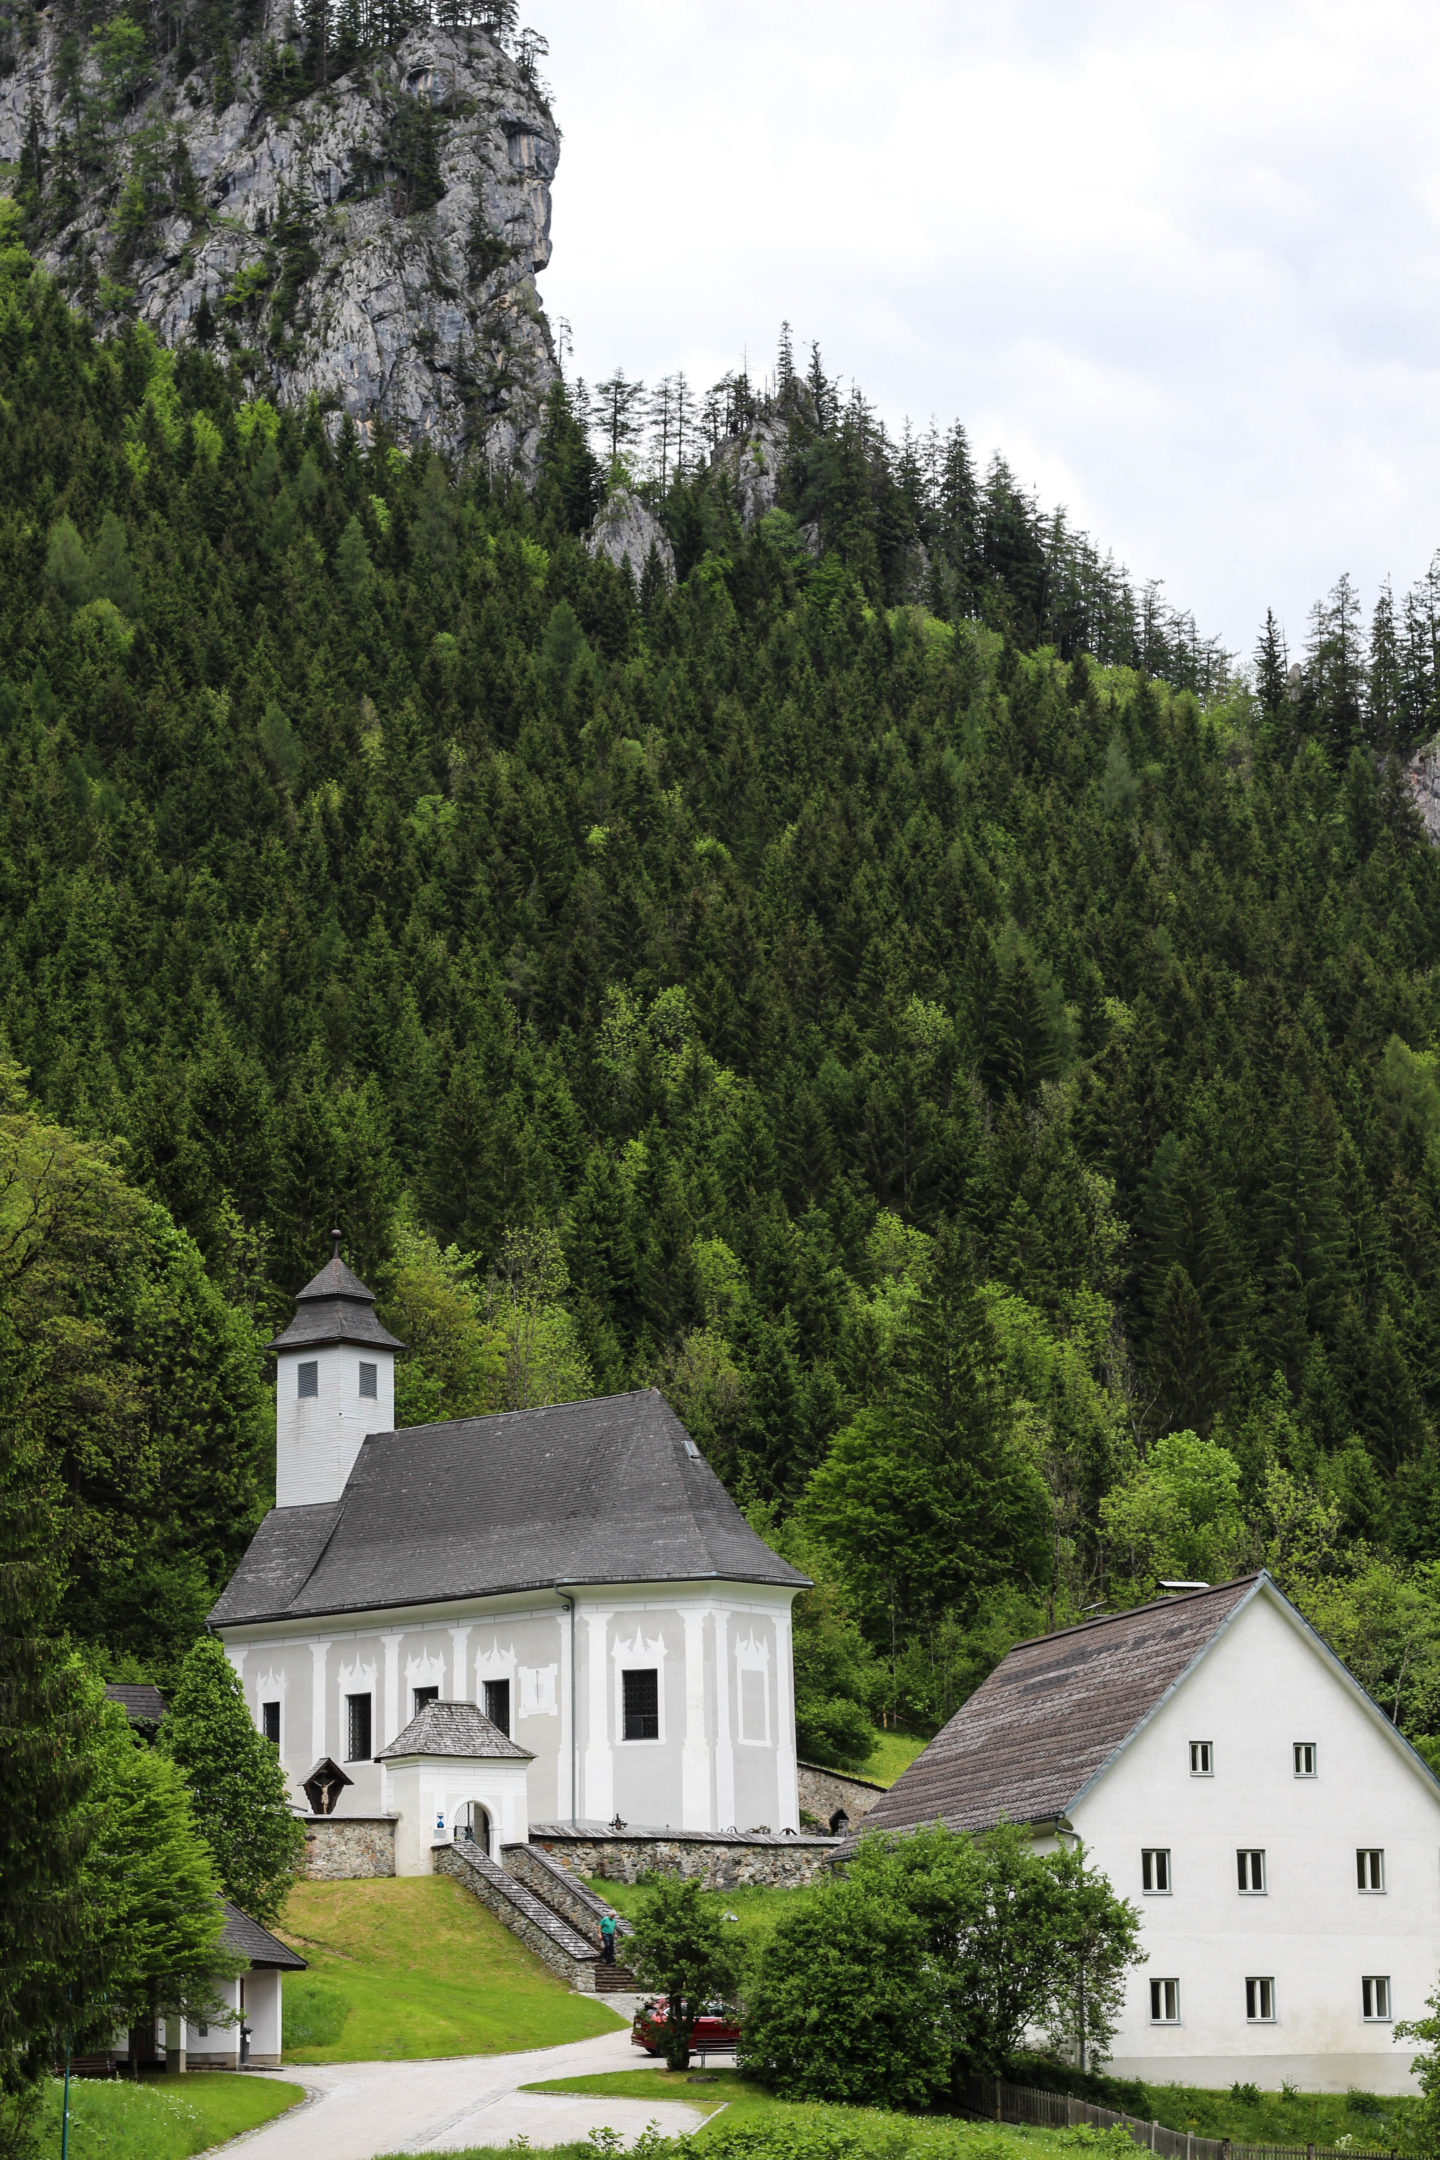 Vegan HomeSpa, Gesäuse,Berge,Austria,Mountains,Alps,Gstatterboden,Johnsbach,Bibelweg,Wanderlust,